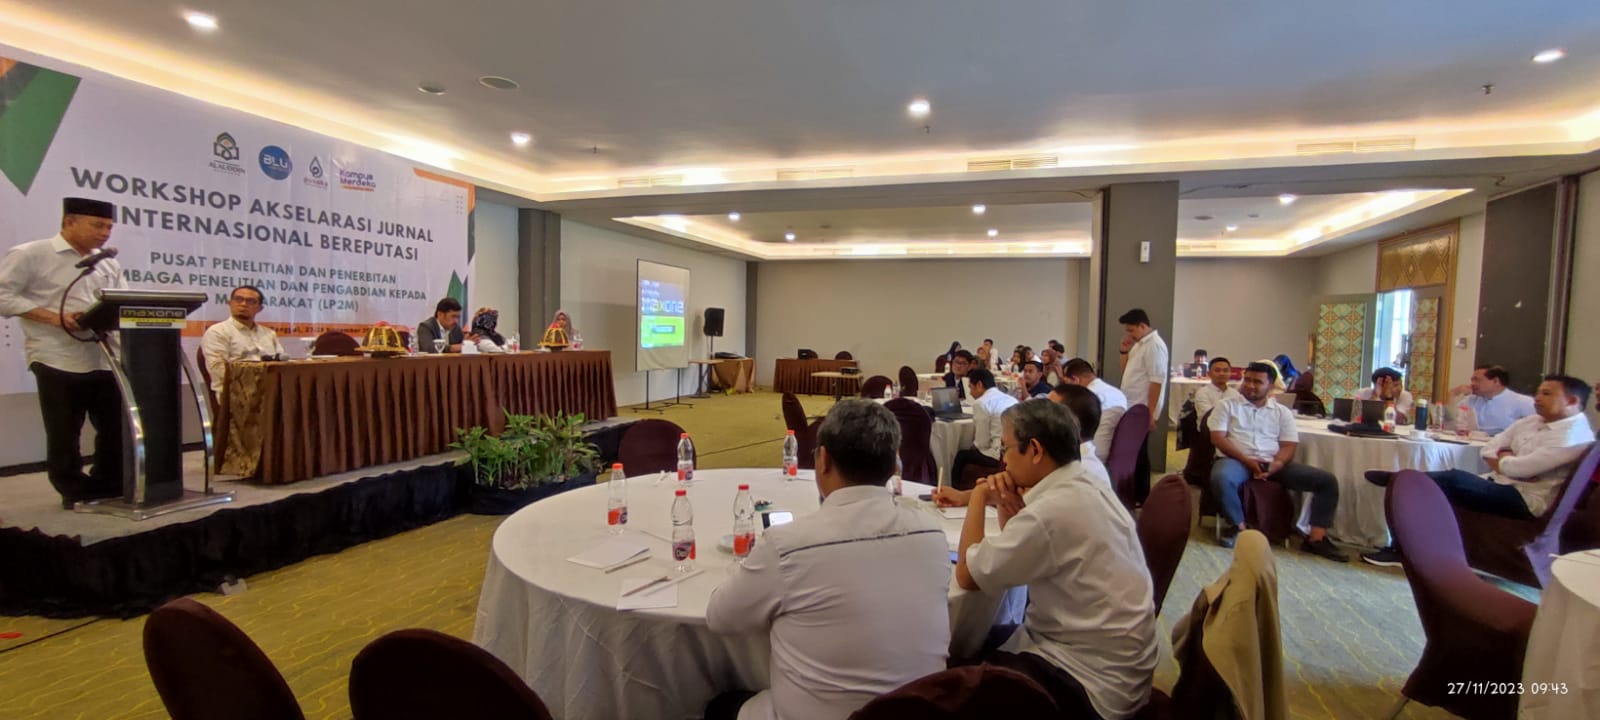 Pembukaan Workshop Akselerasi Jurnal Internasional Bereputasi, Pusat Lembaga Penelitian dan Pengabdian Kepada Masyarakat (LP2M) UIN Alauddin Makassar